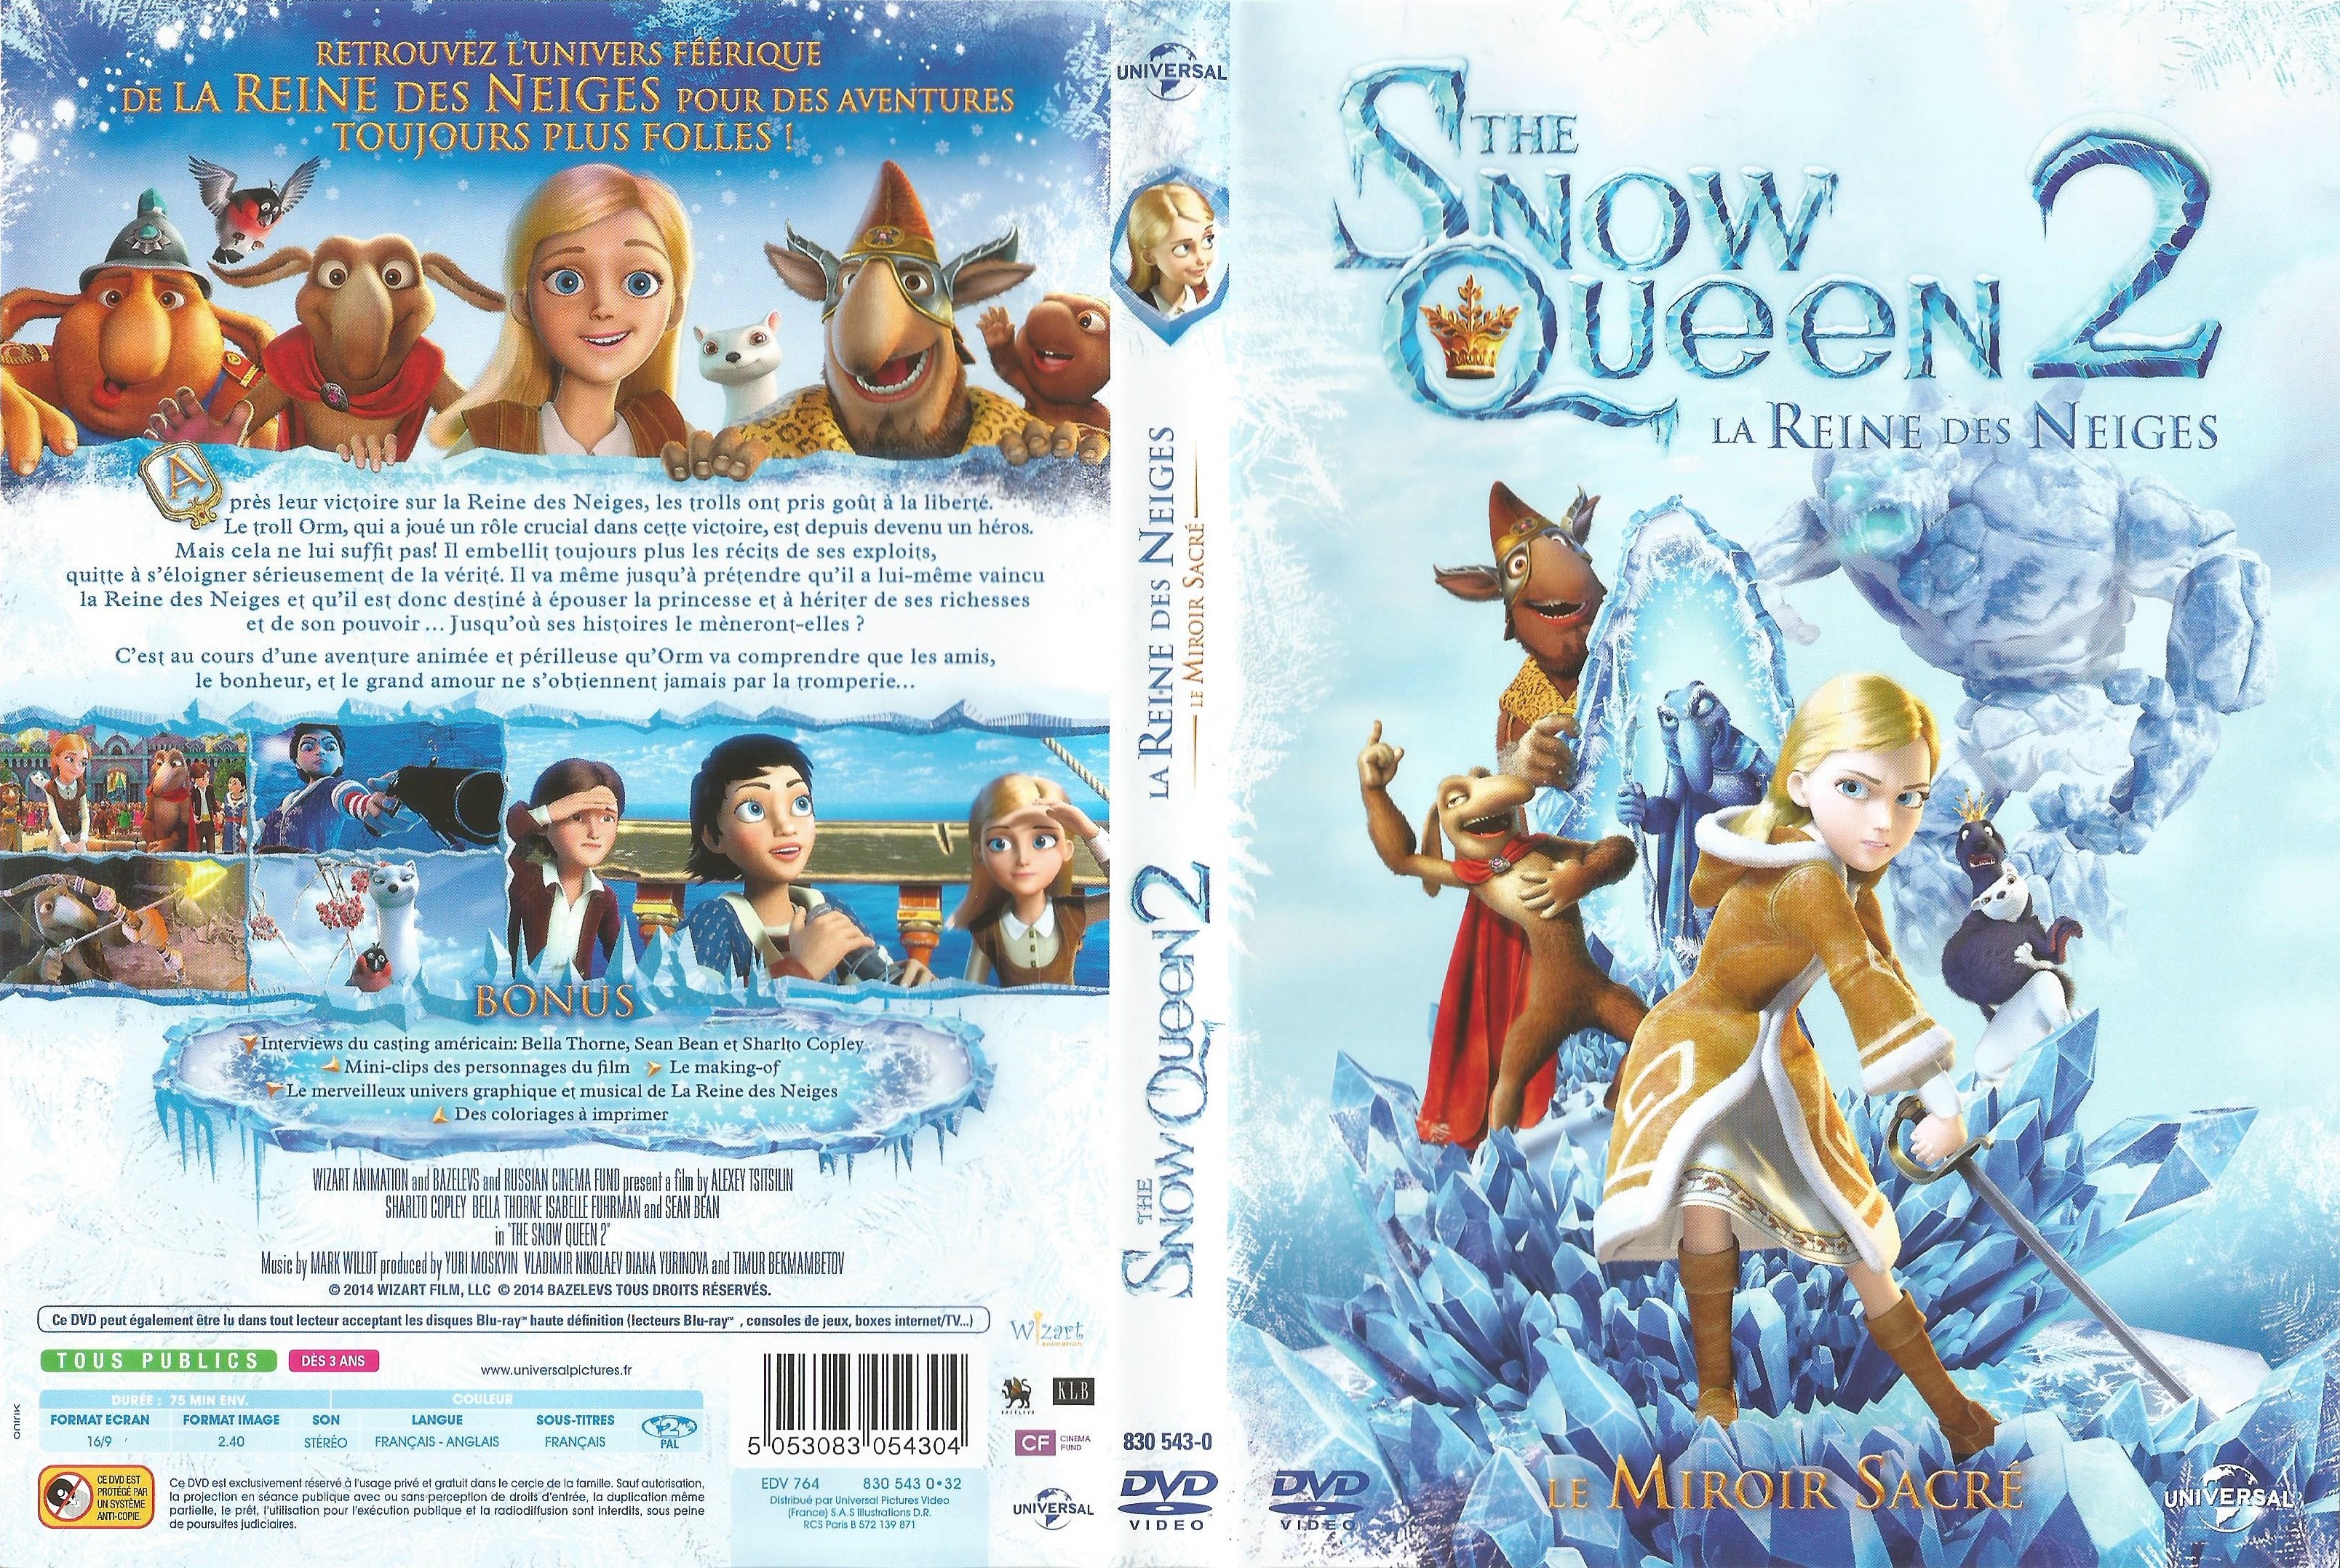 Jaquette DVD The Snow Queen 2, le miroir sacr